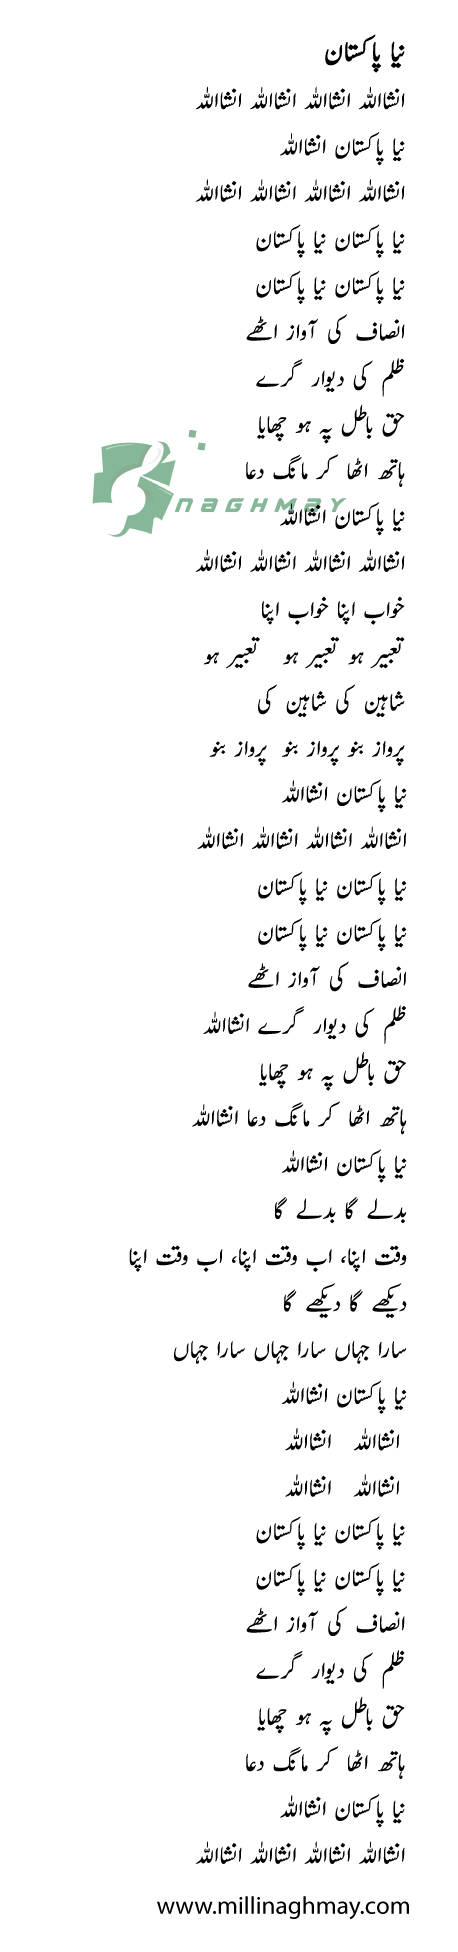 Naya Pakistan Song Lyrics Urdu